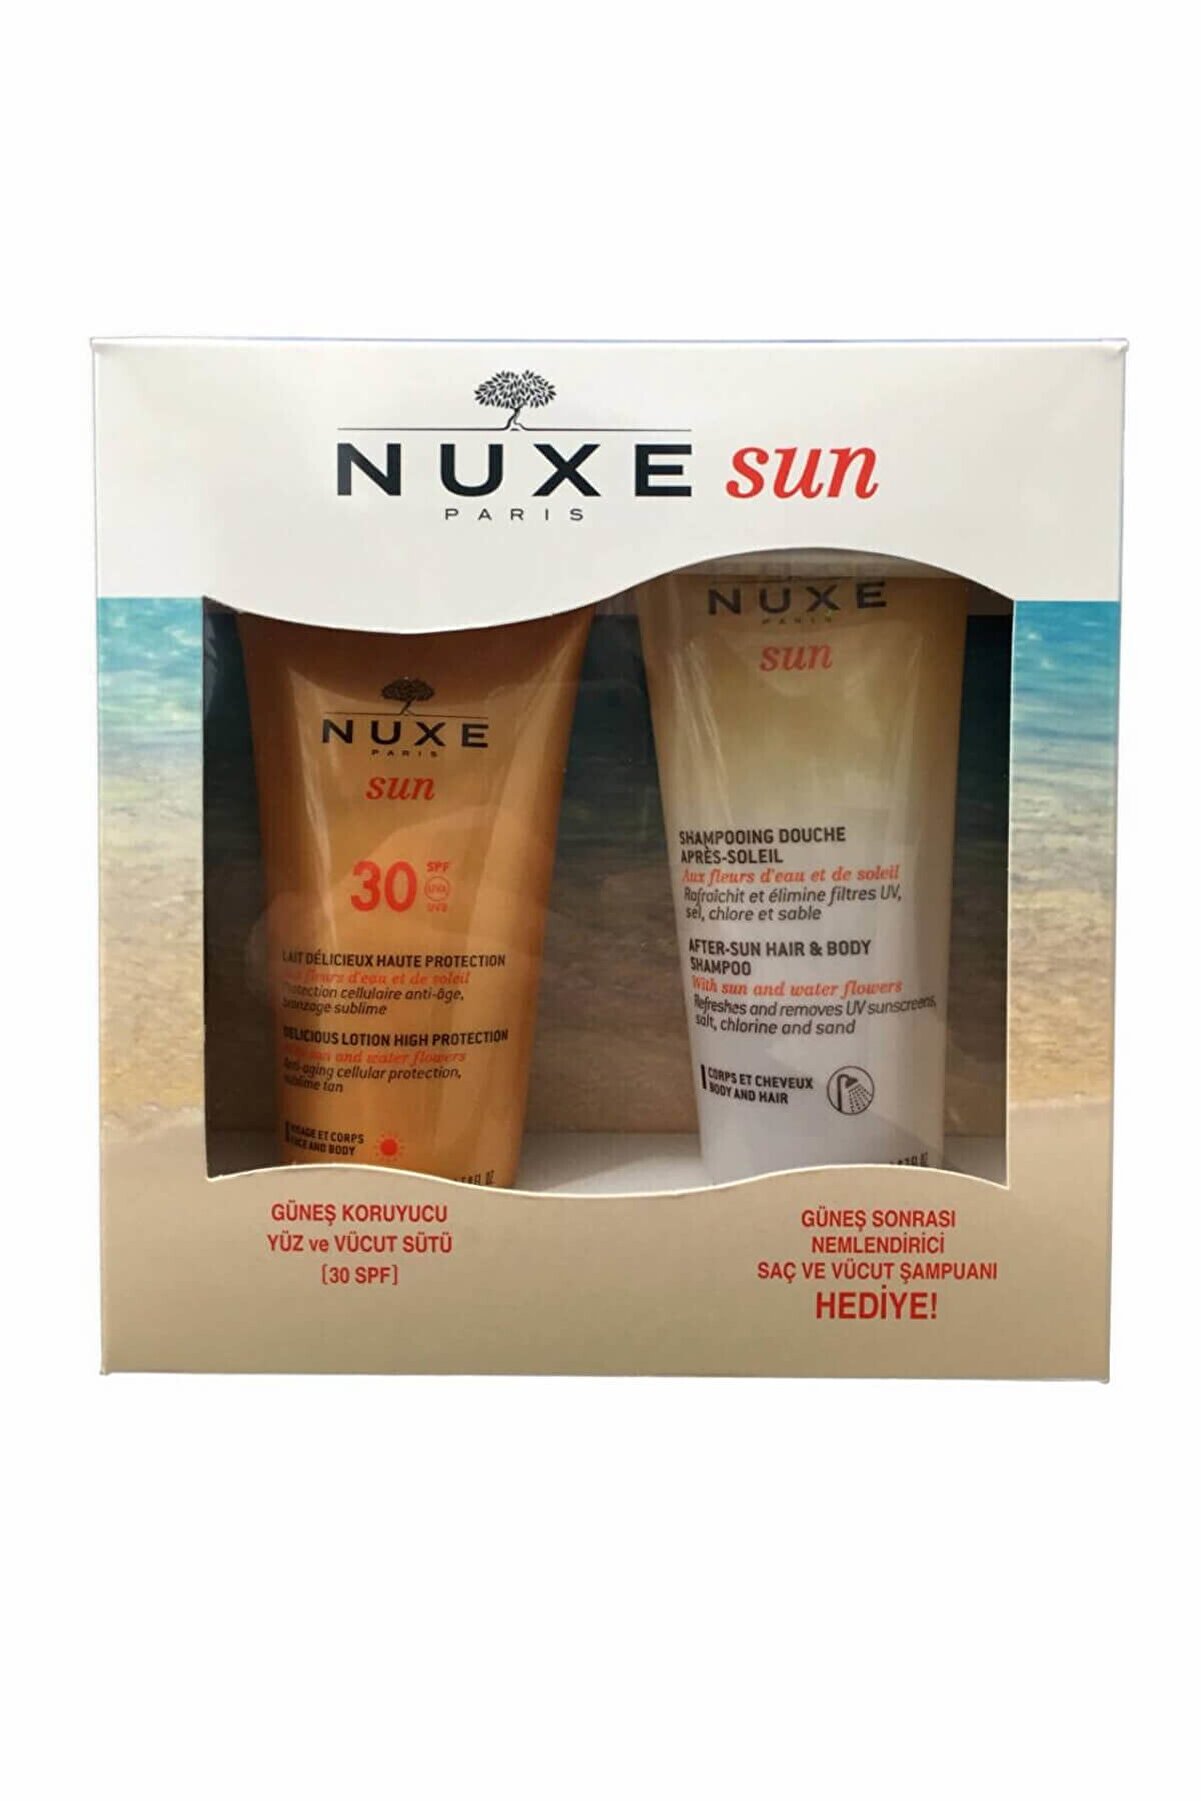 Nuxe Güneş Koruyucu Yüz ve Vücut Sütü SPF30 150 ml + Güneş Sonrası Şampuanı - 200 ml 30177002K18